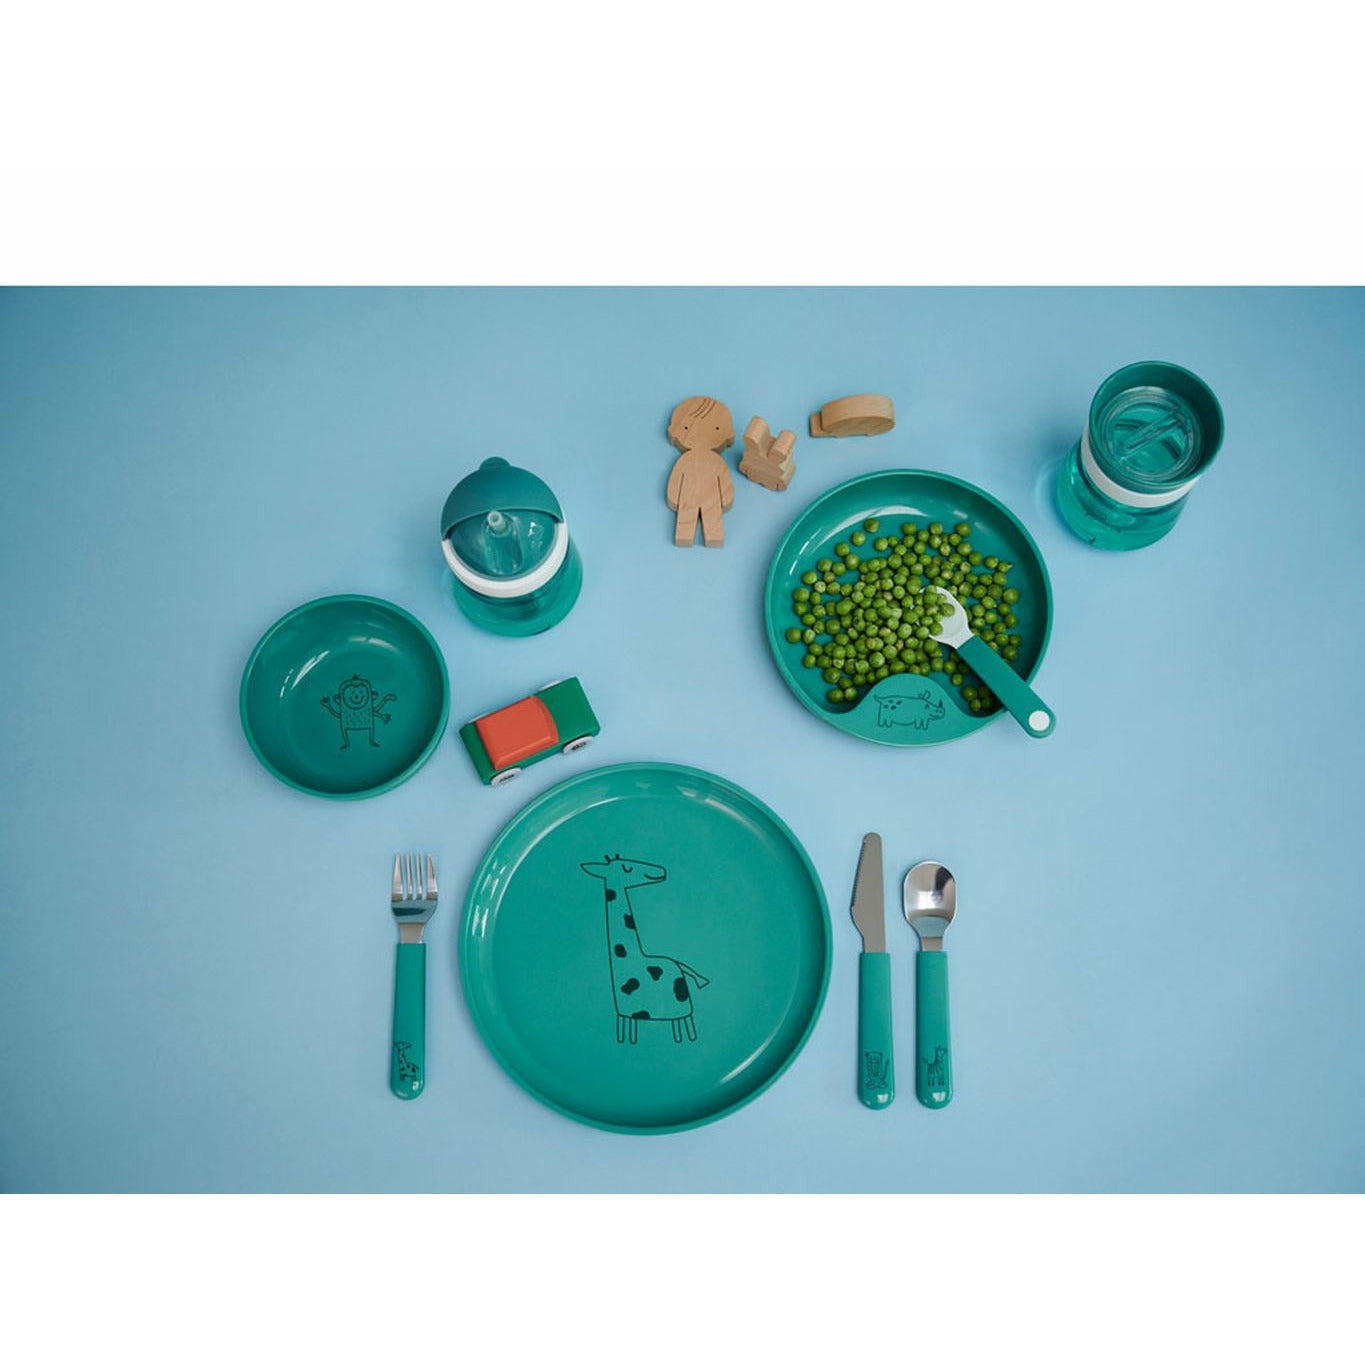 Mepal Mio Children's bestek Set 3 pc's, turquoise